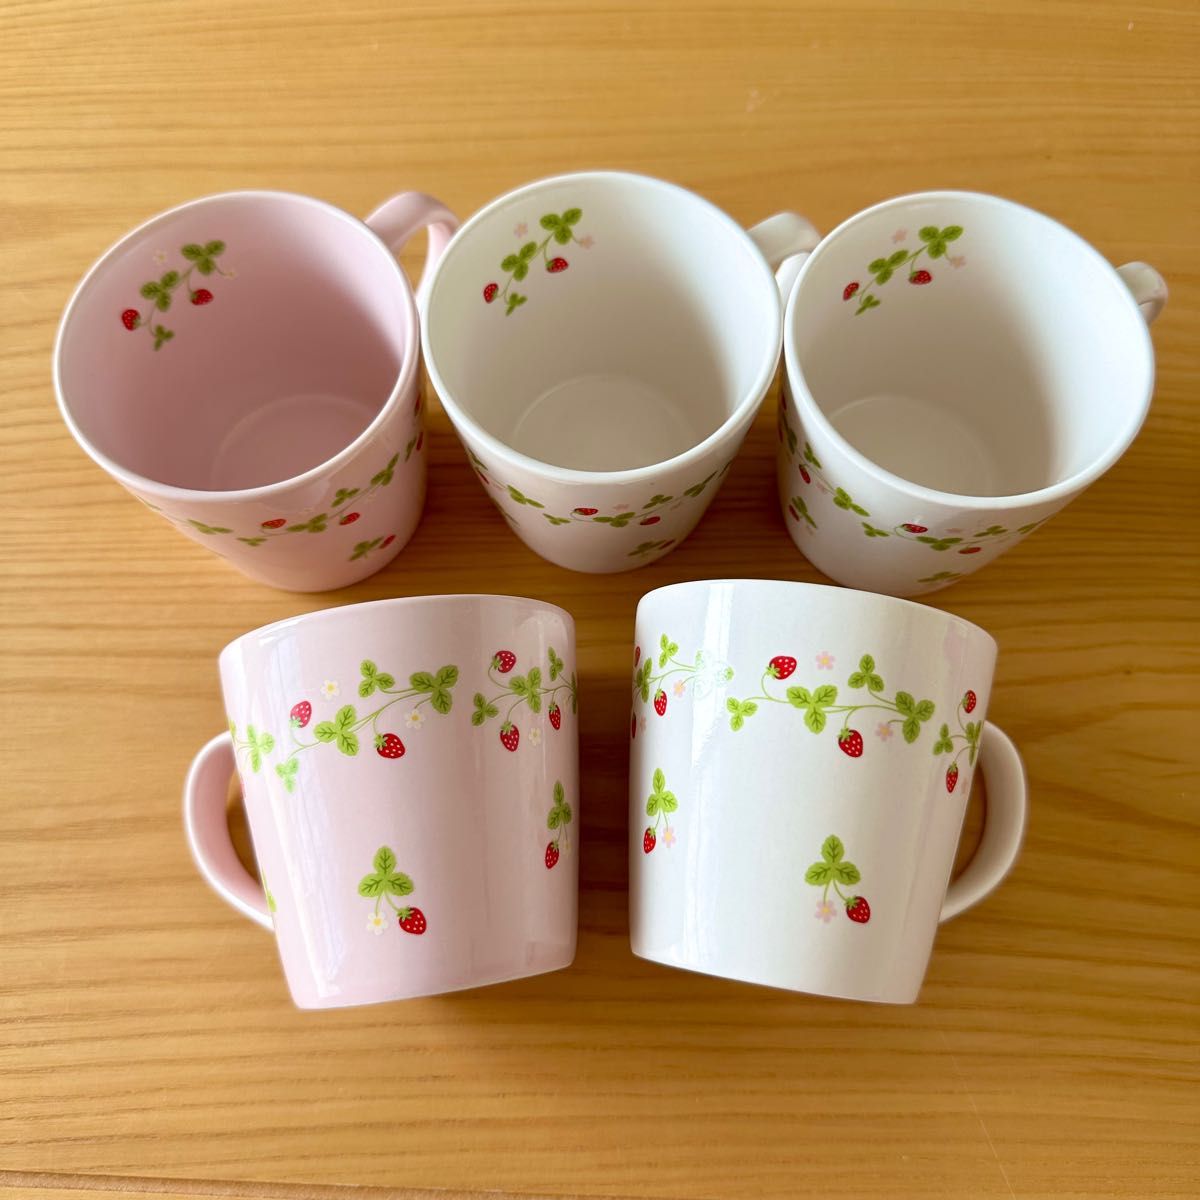 マザーガーデン mother garden 苺 いちご【マグカップ】5個 セット ピンク ホワイト ロマンティックガーデン